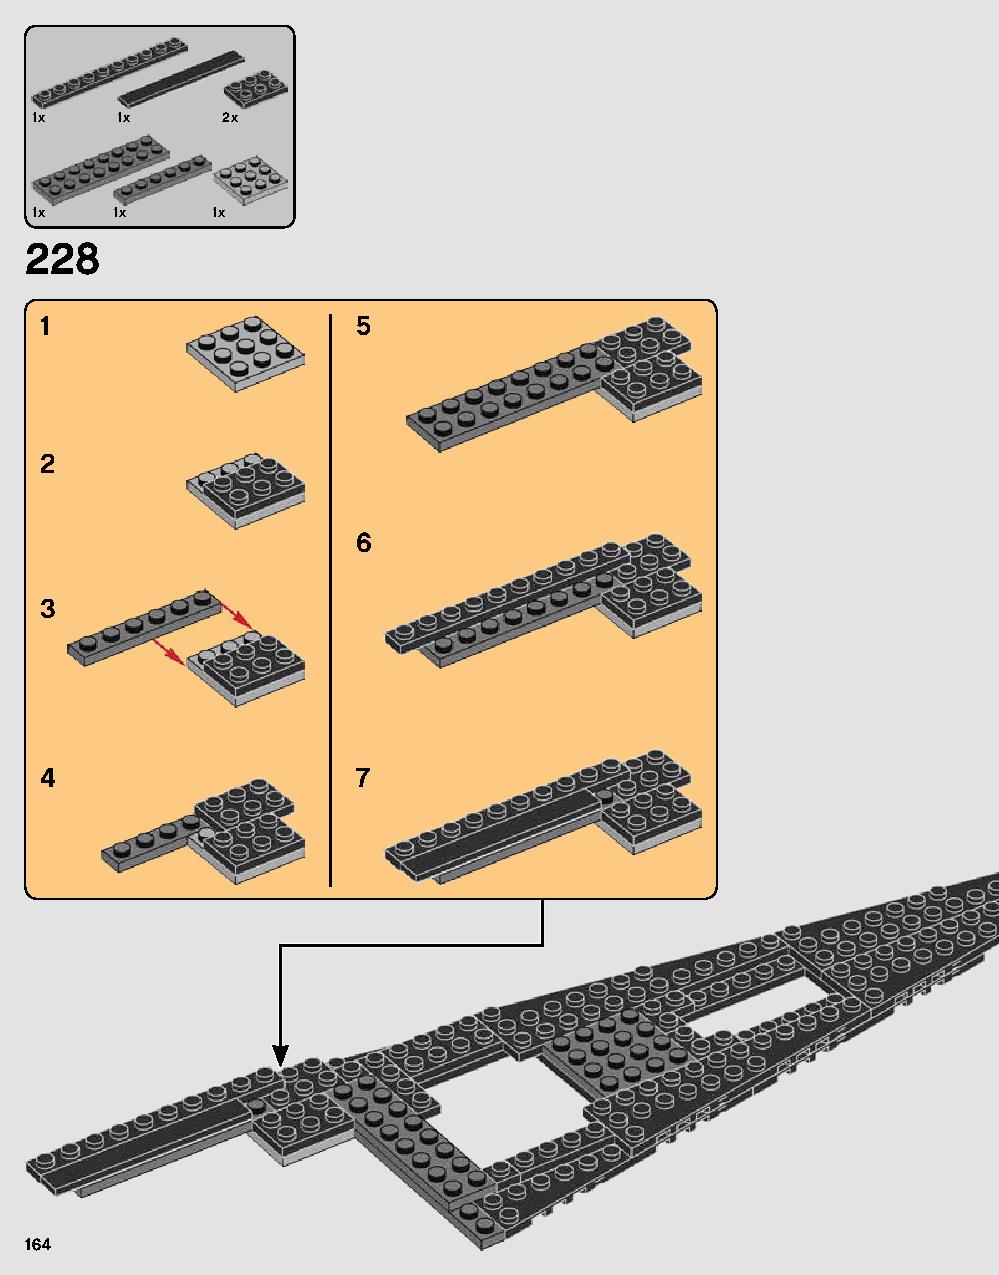 ダース・ベイダーの城 75251 レゴの商品情報 レゴの説明書・組立方法 164 page